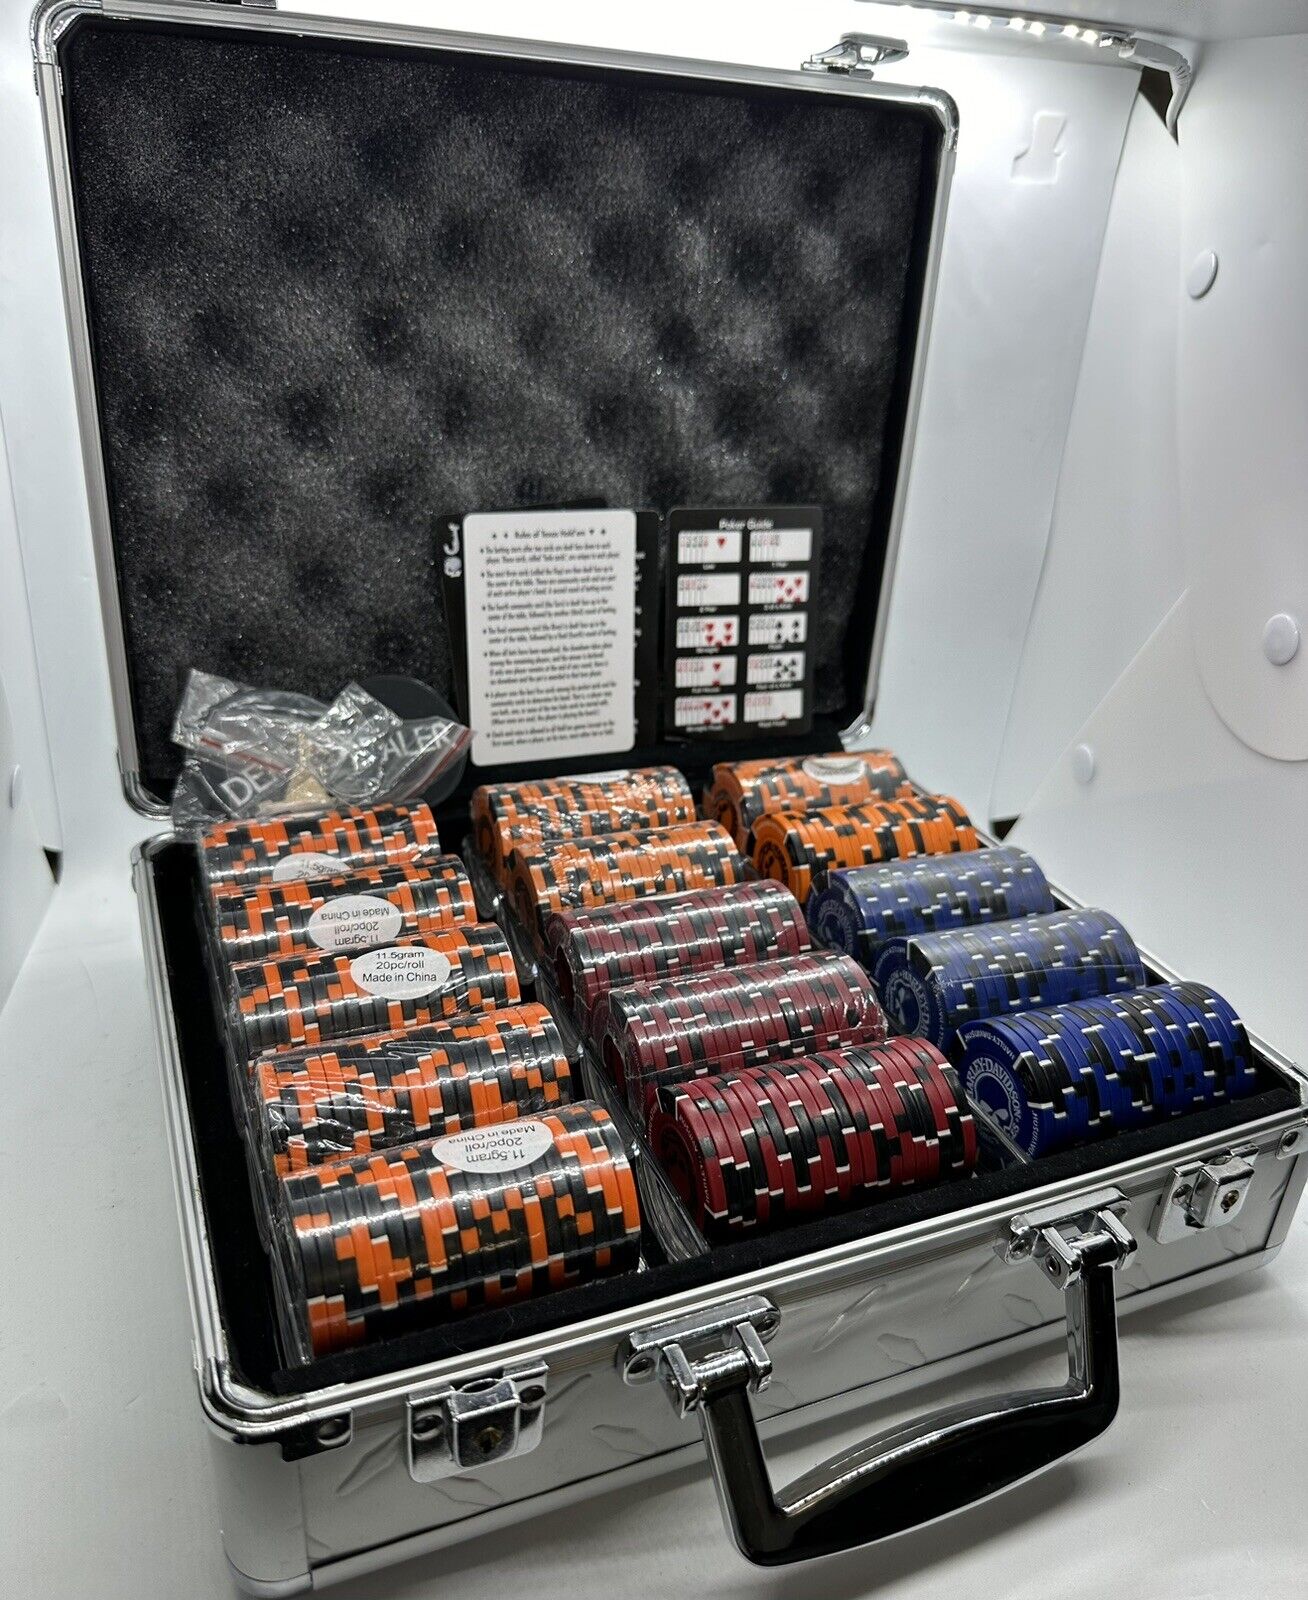 Super Rare Harley Davidson Poker Chip Chips Set, Case, Keys, Sealed Chips Read